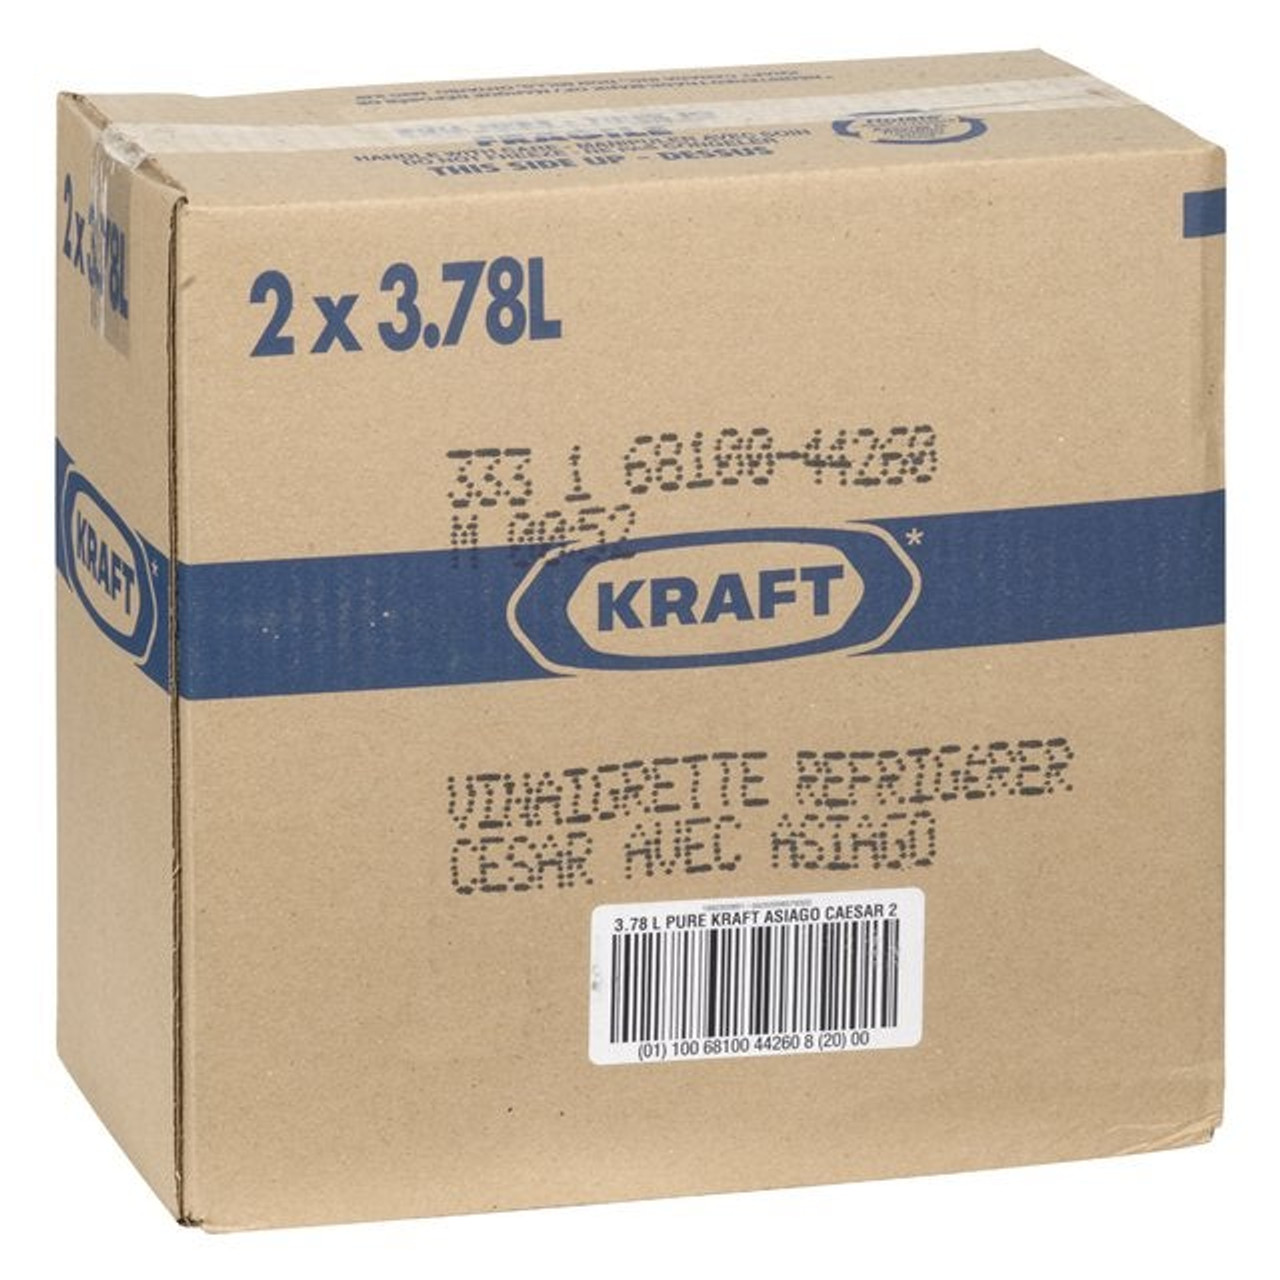 Kraft Pure Pure Asiago Caesar Dressing | 3.78L/Unit, 2 Units/Case